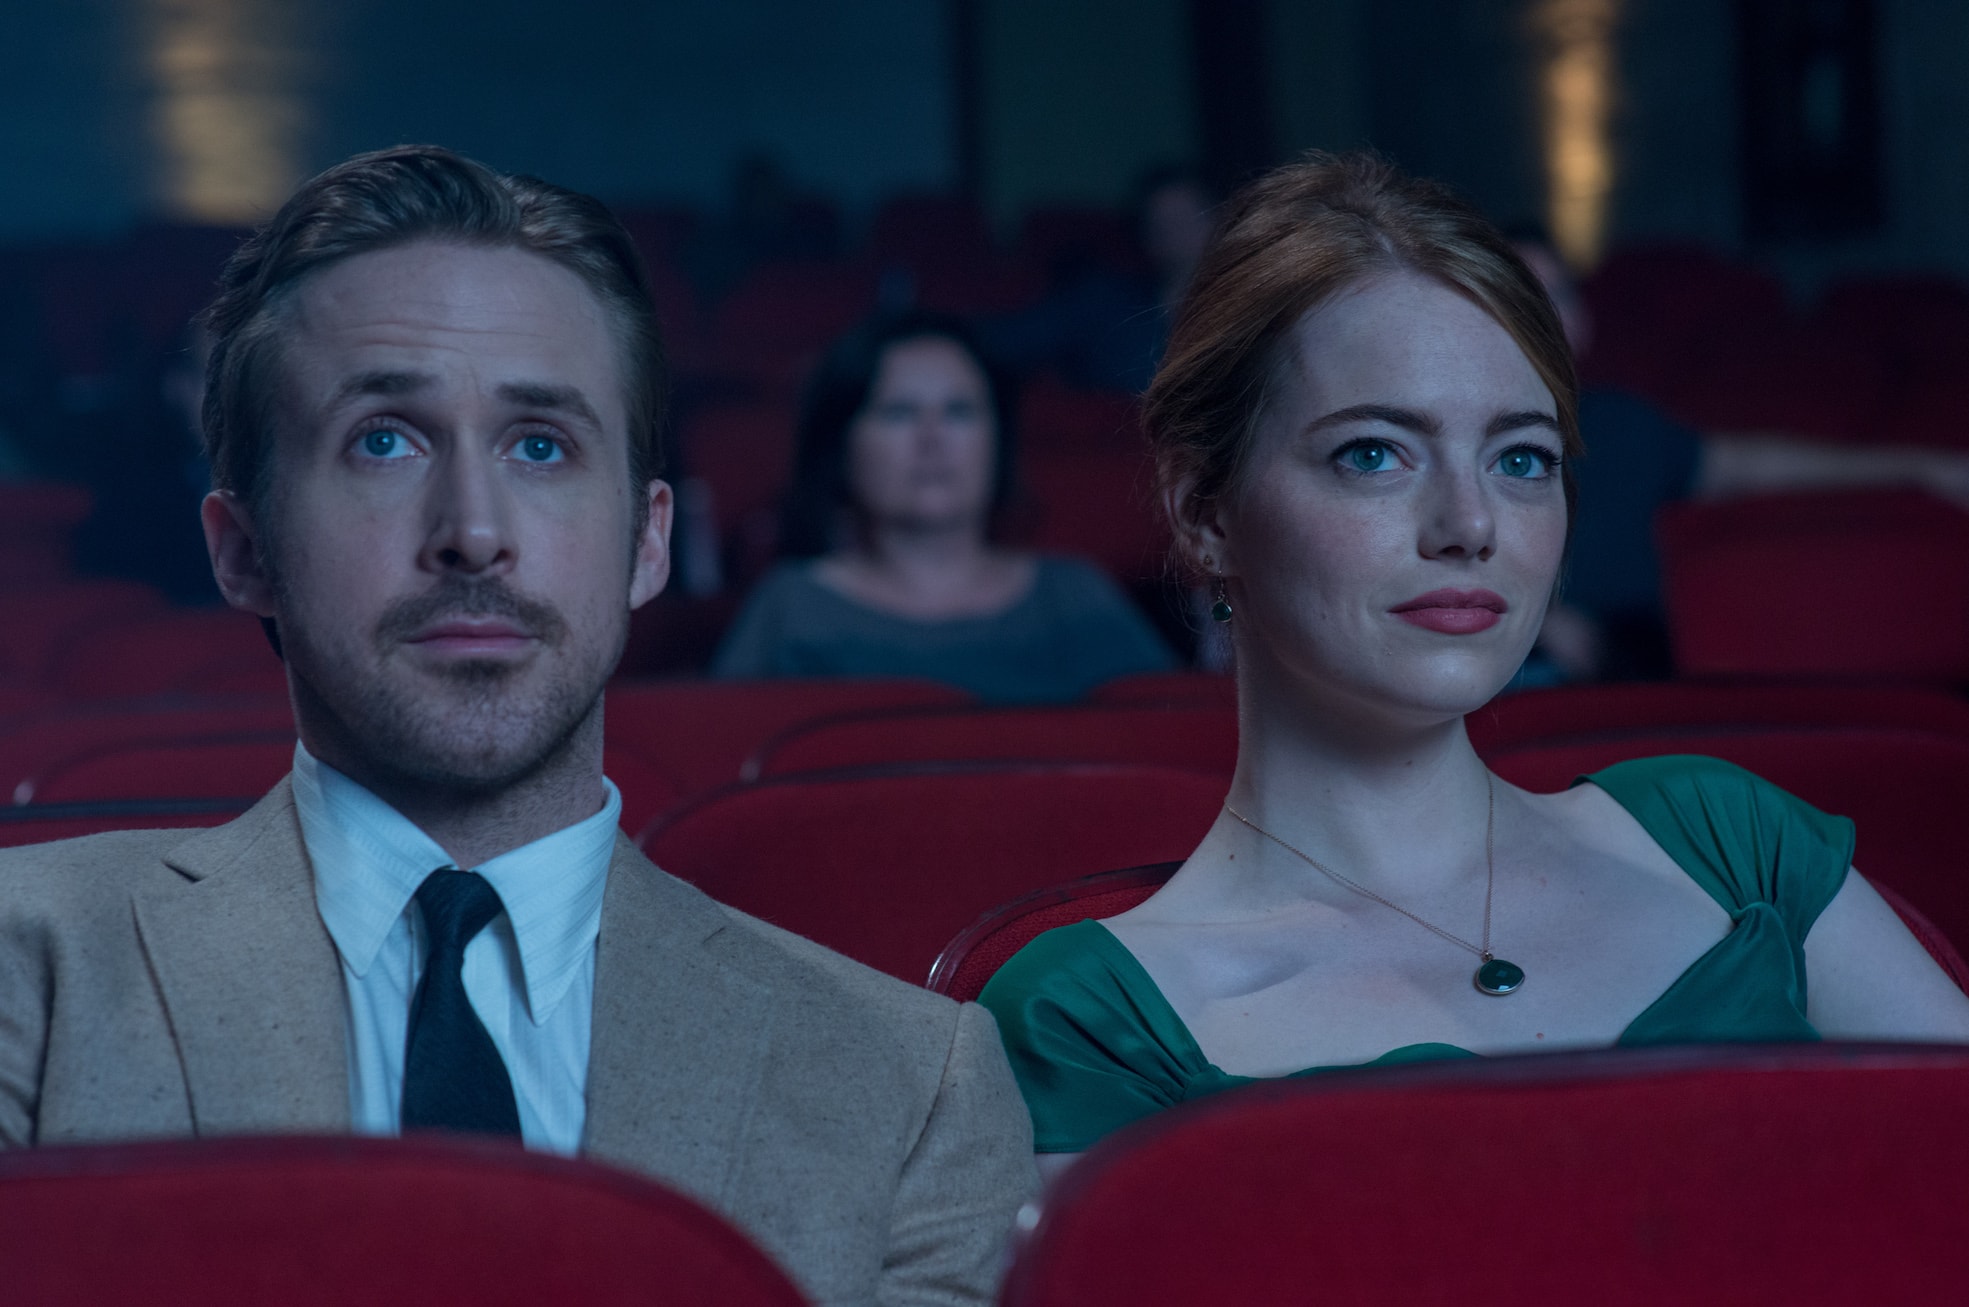 Nädala parim film: ostke “La La Land: lauluhooajad” koos Ryan Goslingi ja Emma Stoneiga 9,90 R $ eest!